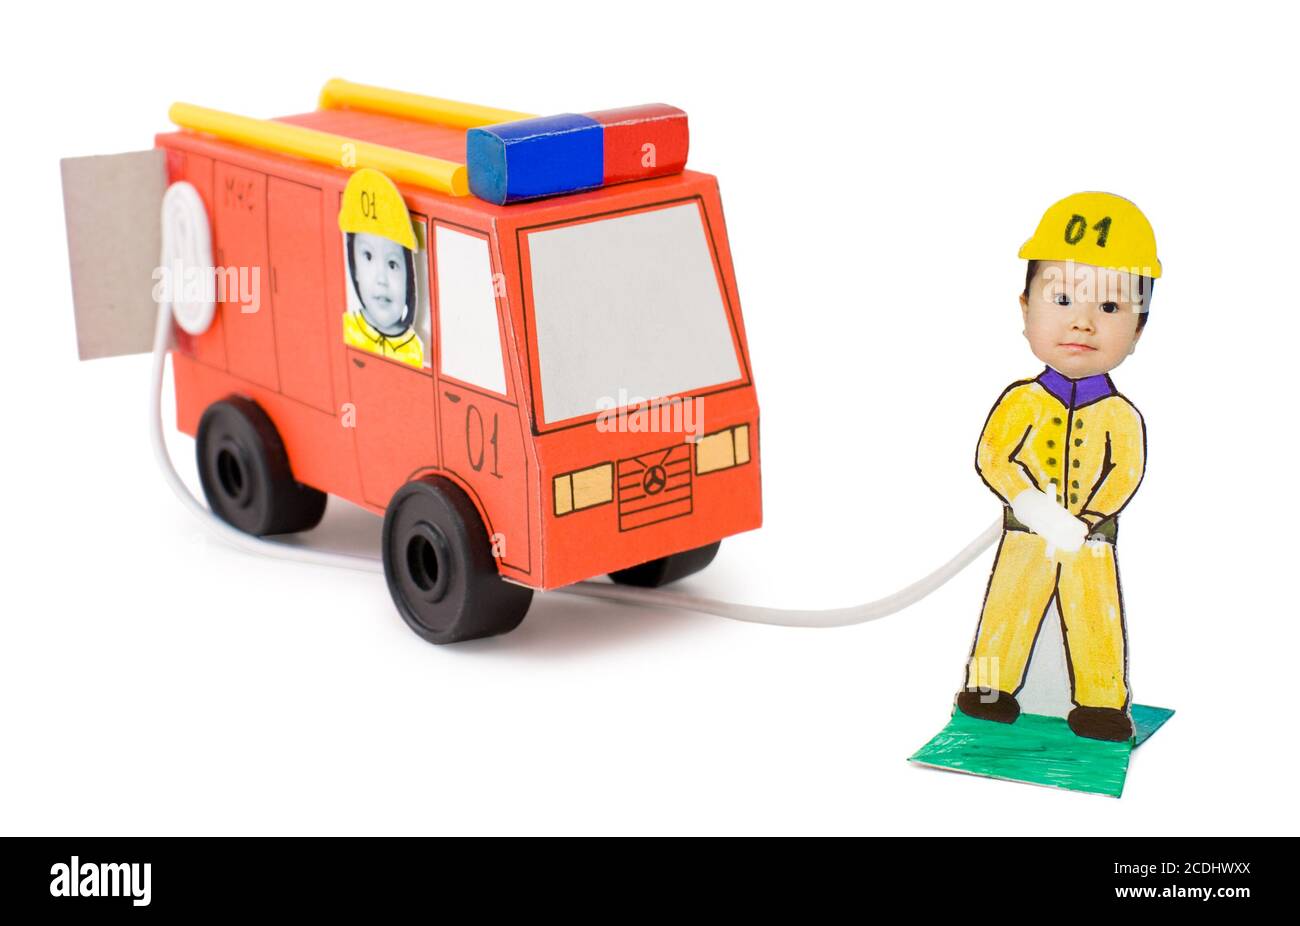 pompiers, artisanat en carton pour enfants Banque D'Images